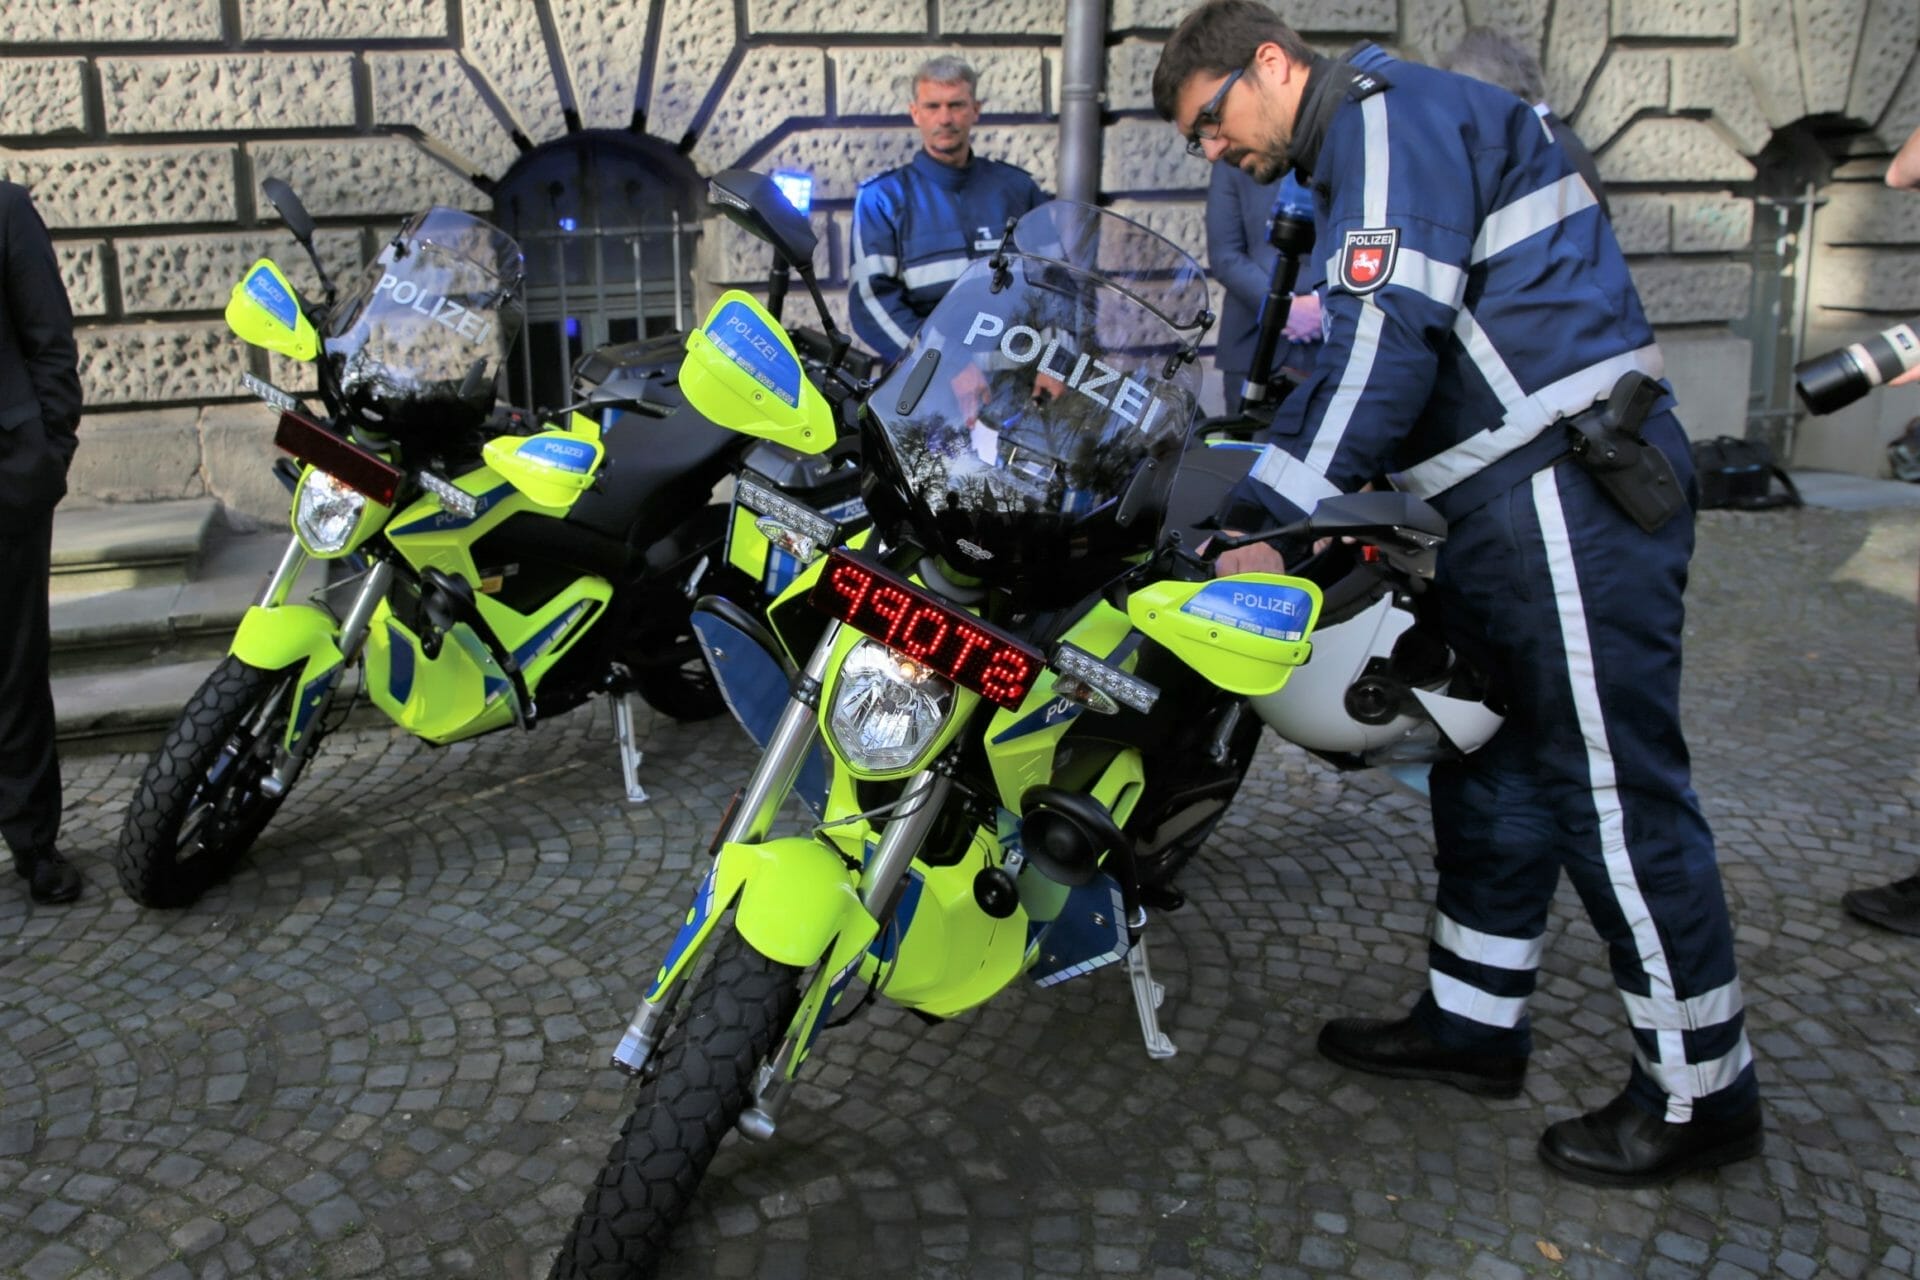 Polizei mit Elektromotorrädern im Einsatz zufrieden﻿